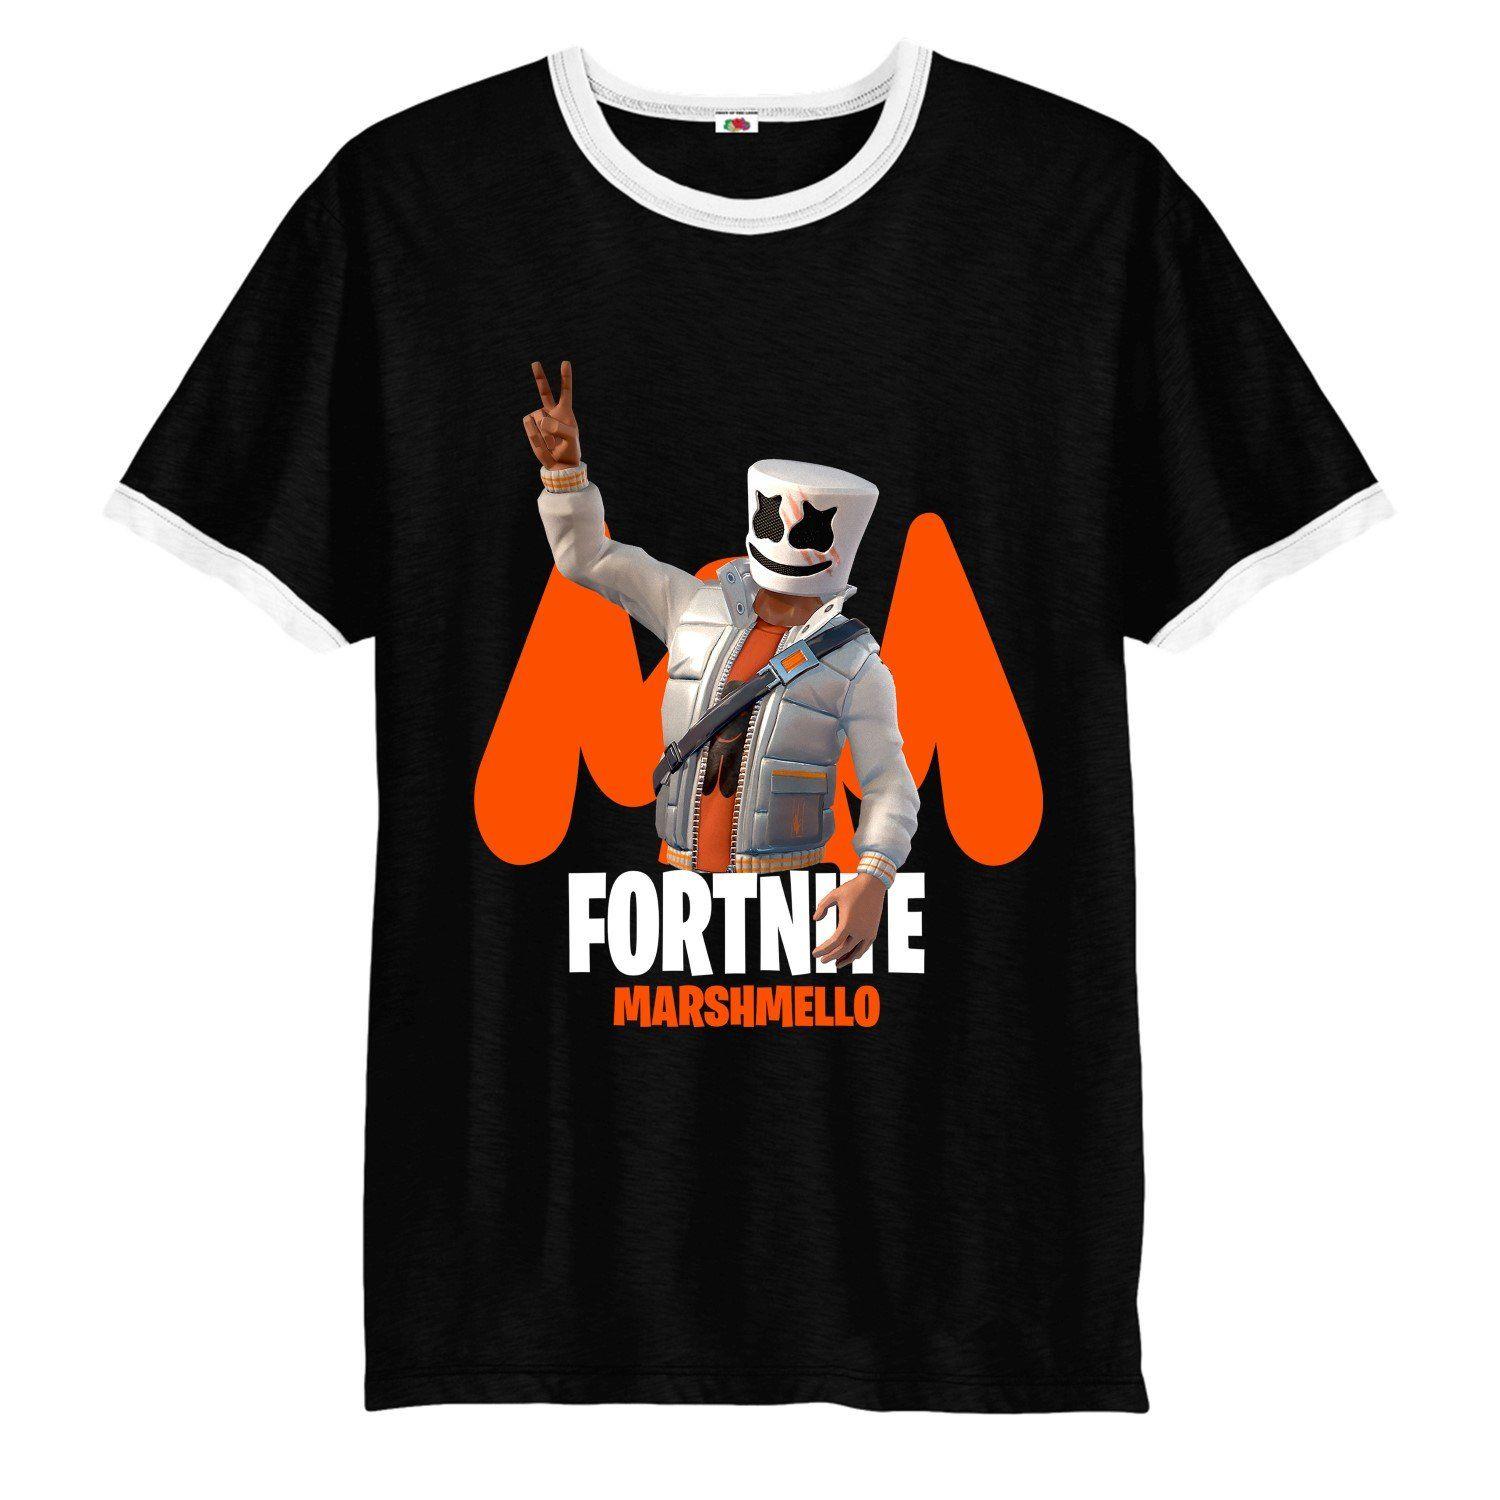 Marshmello Logo - Fortnite Marshmello logo victory gamer Ringer T-Shirt, adult and kids  inspired spoof Ringer Top